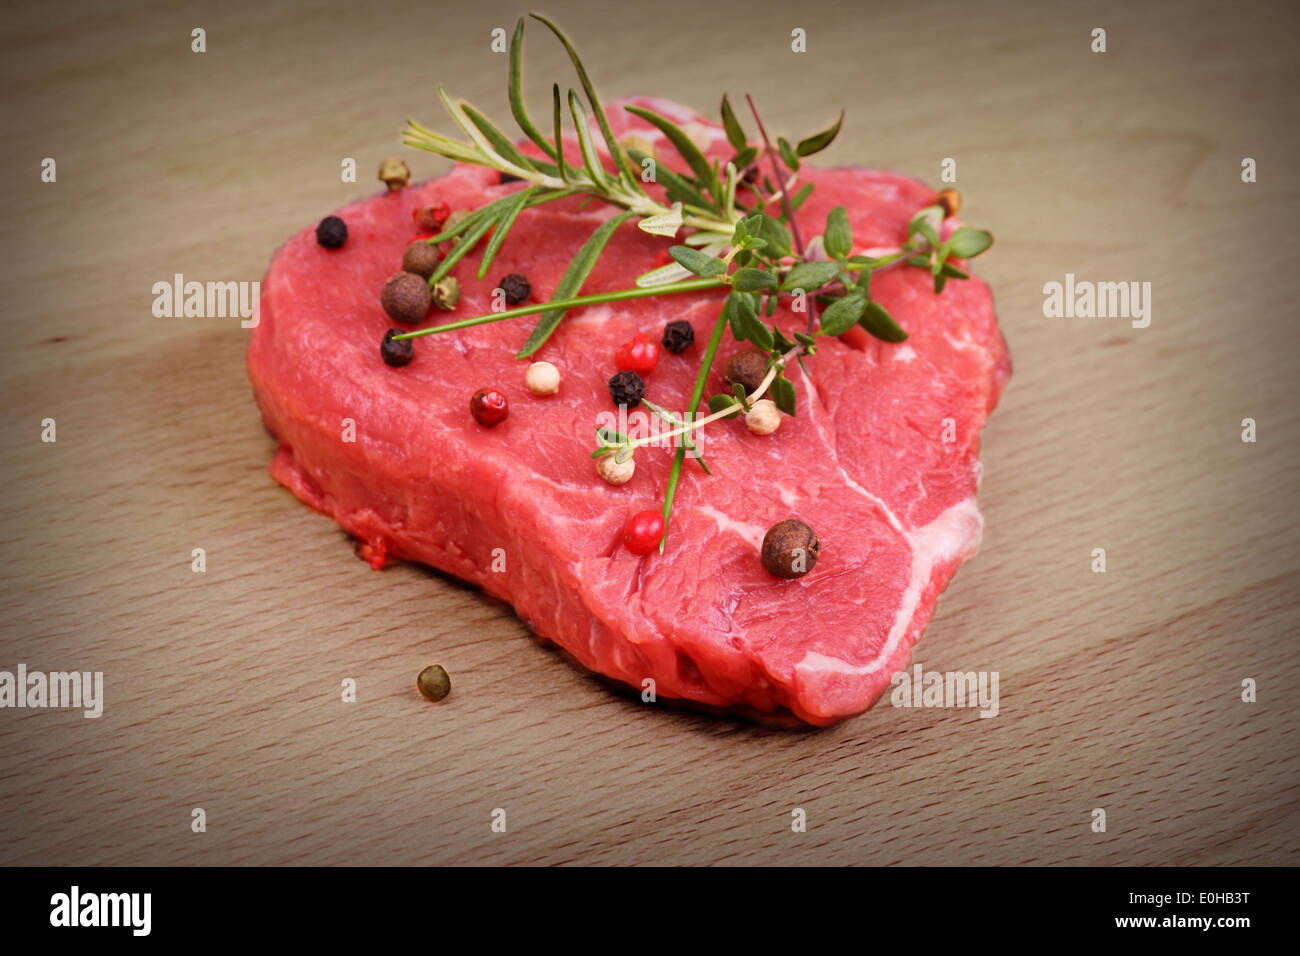 Steak de bœuf juteux avec épices et fines herbes, vignette Banque D'Images